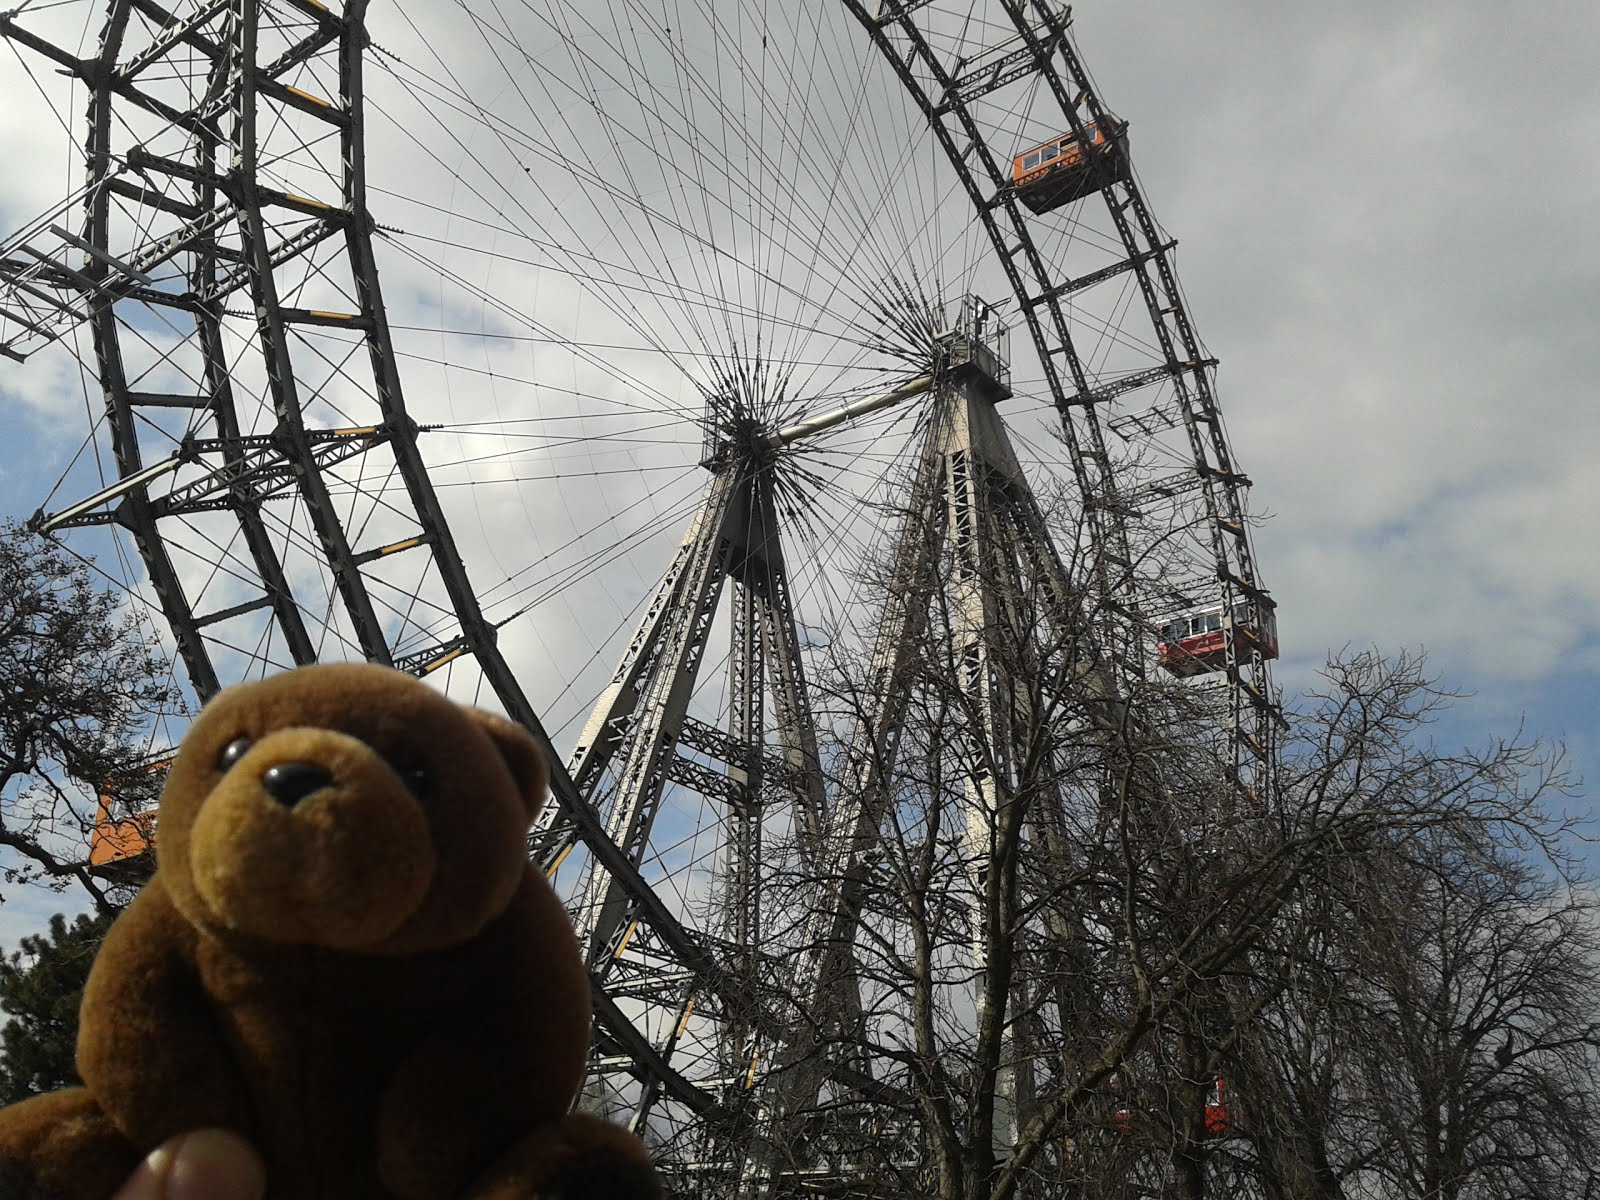 Teddy Bear in Prater, Vienna